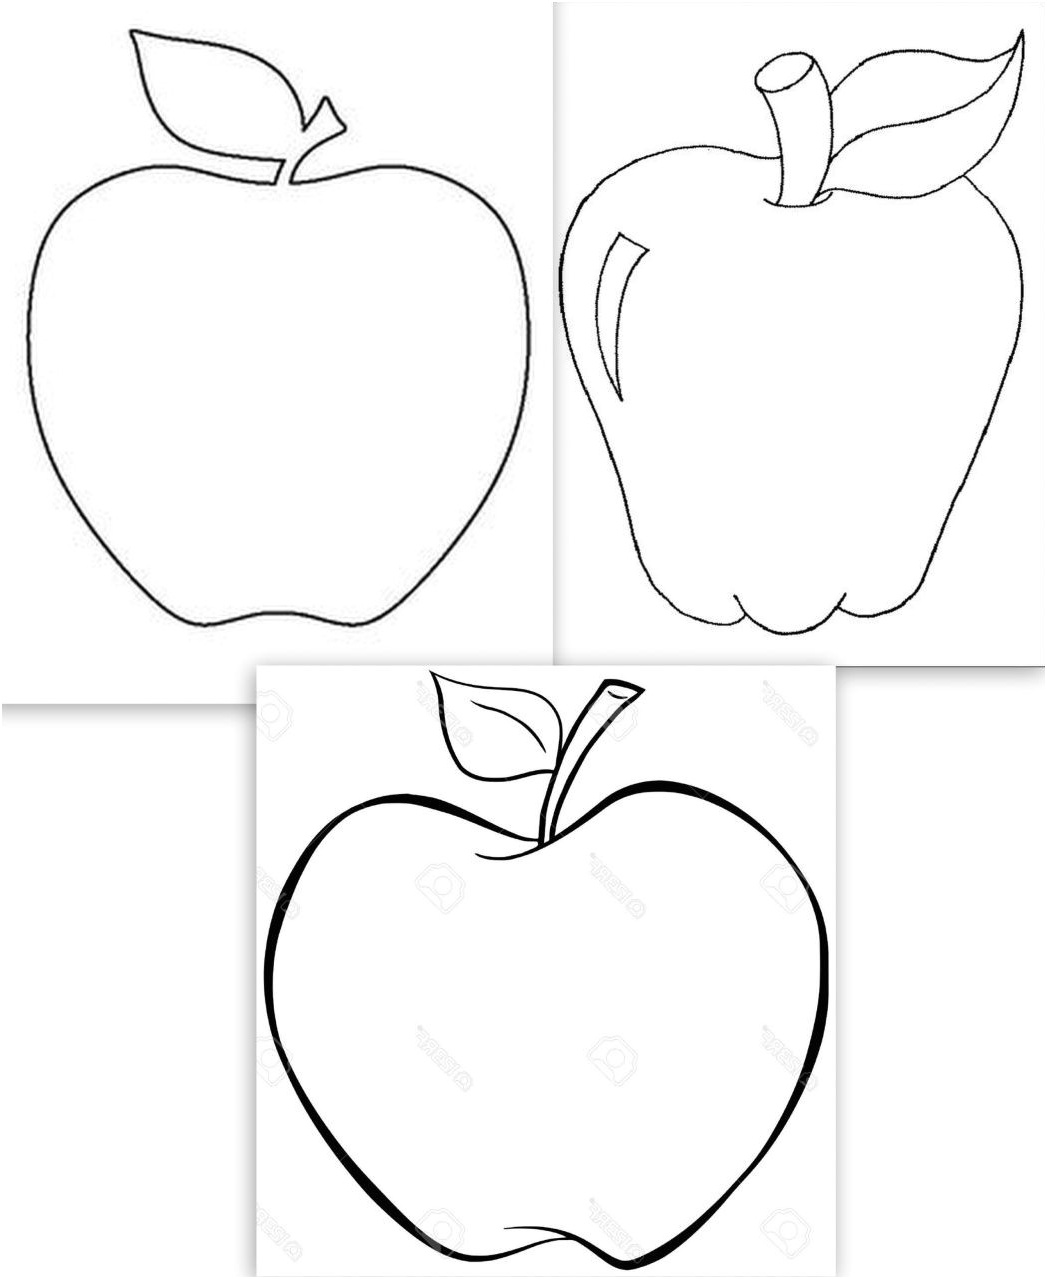 coloriage d une pomme dessins grosses pommes pomme pinterest